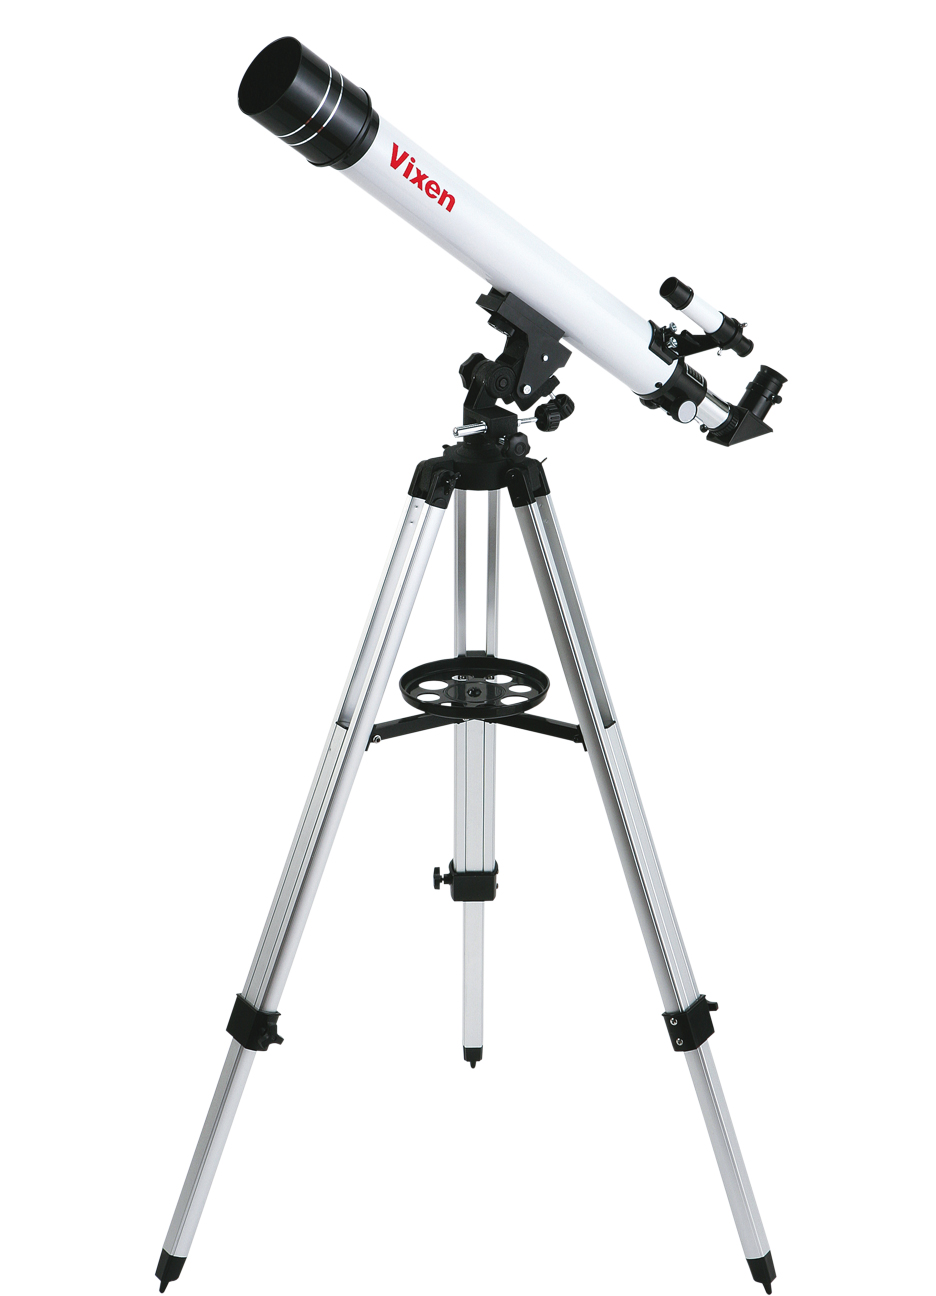 Hvězdářský dalekohled Vixen 70/700 AZ (montáž s jemnými pohyby)